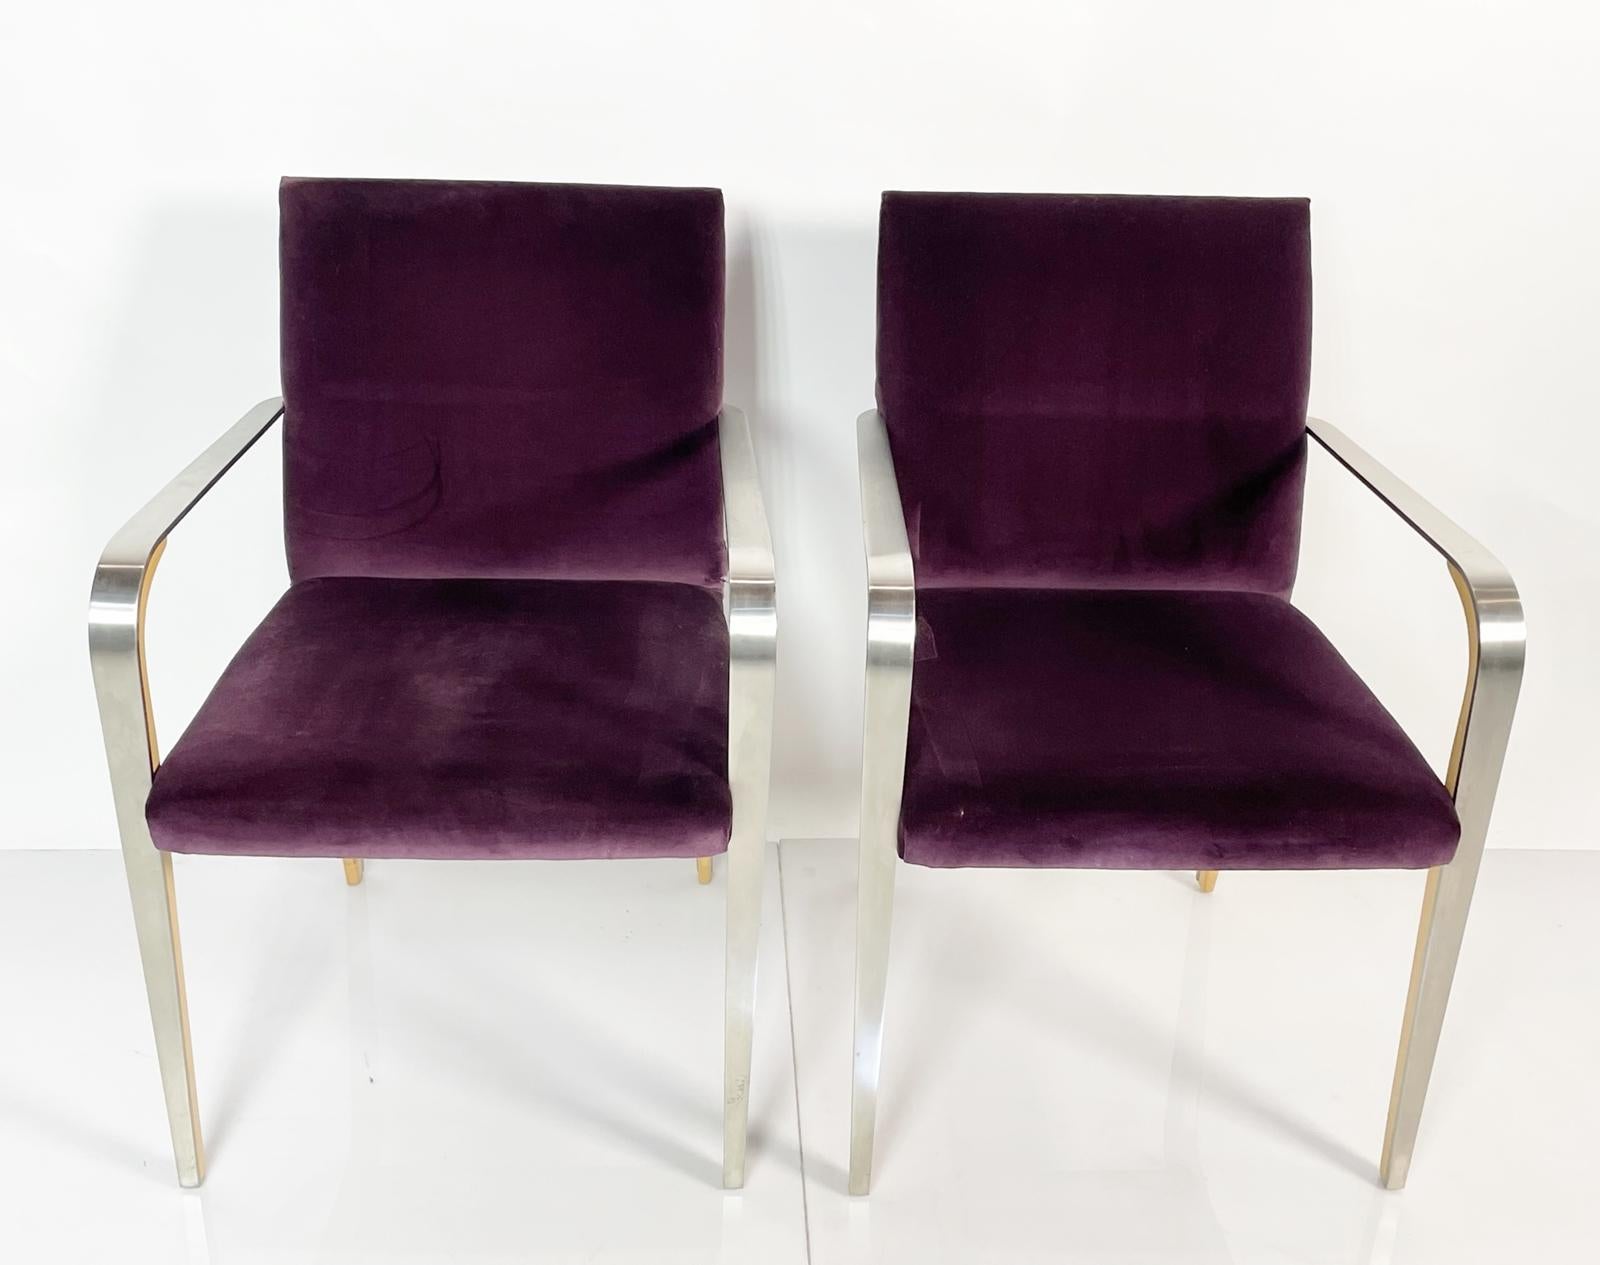 Das Sesselpaar mit Metall- und Holzrahmen von Bernhardt ist die perfekte Ergänzung für jeden stilvollen Wohnbereich. Diese atemberaubenden Stühle zeichnen sich durch ein elegantes und modernes Design aus, mit einem Metallrahmen auf jeder Seite und